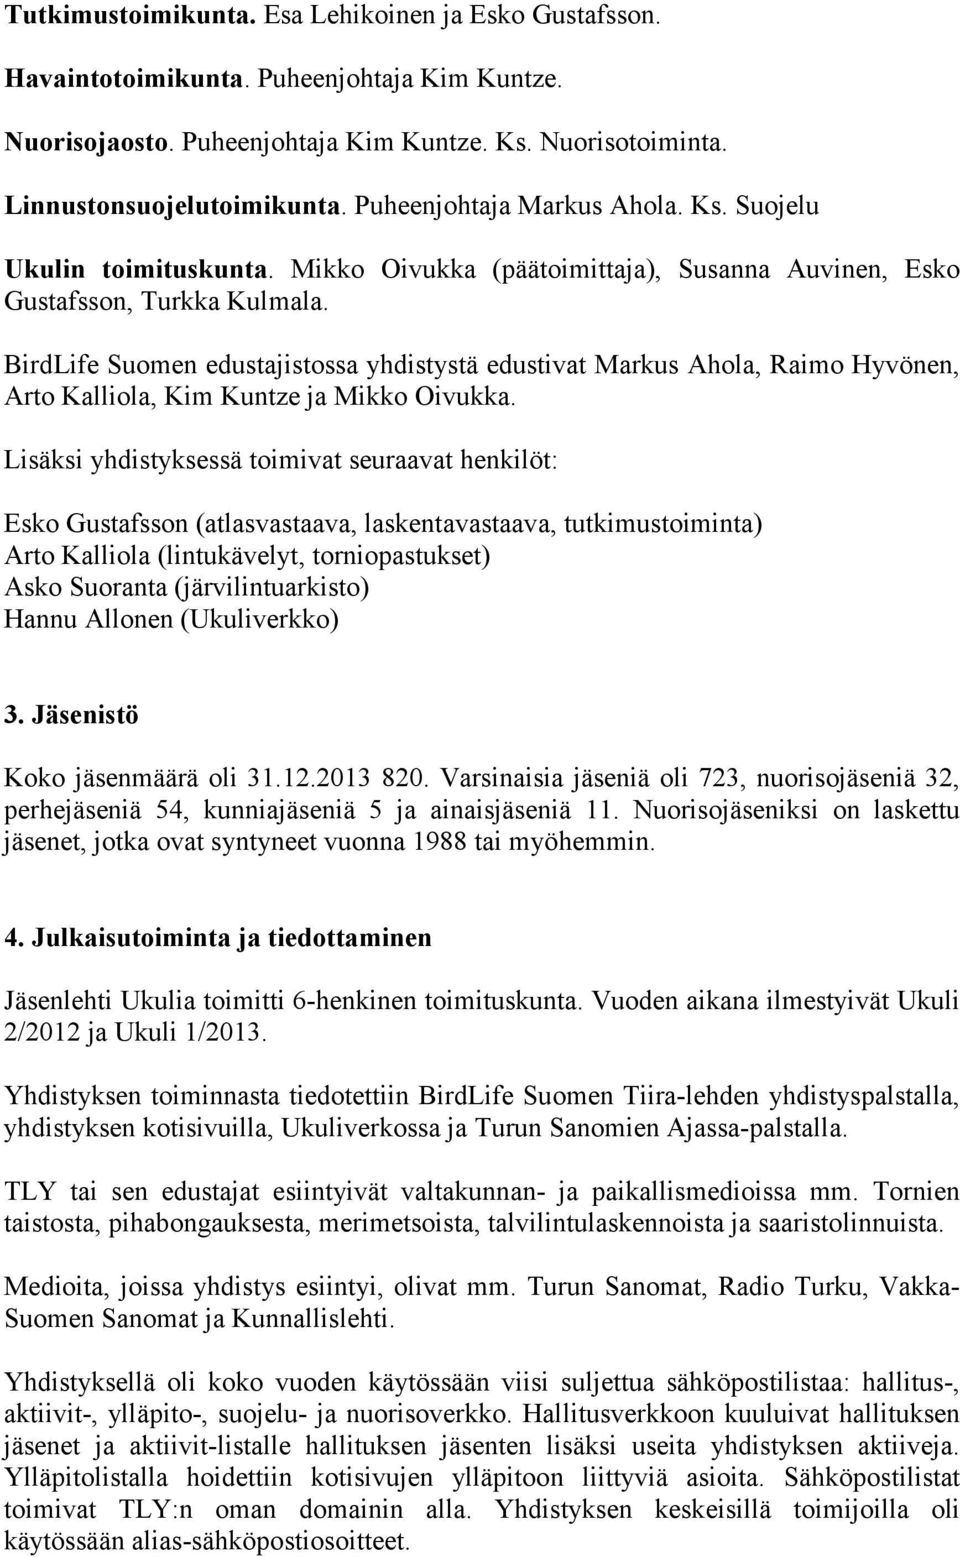 BirdLife Suomen edustajistossa yhdistystä edustivat Markus Ahola, Raimo Hyvönen, Arto Kalliola, Kim Kuntze ja Mikko Oivukka.